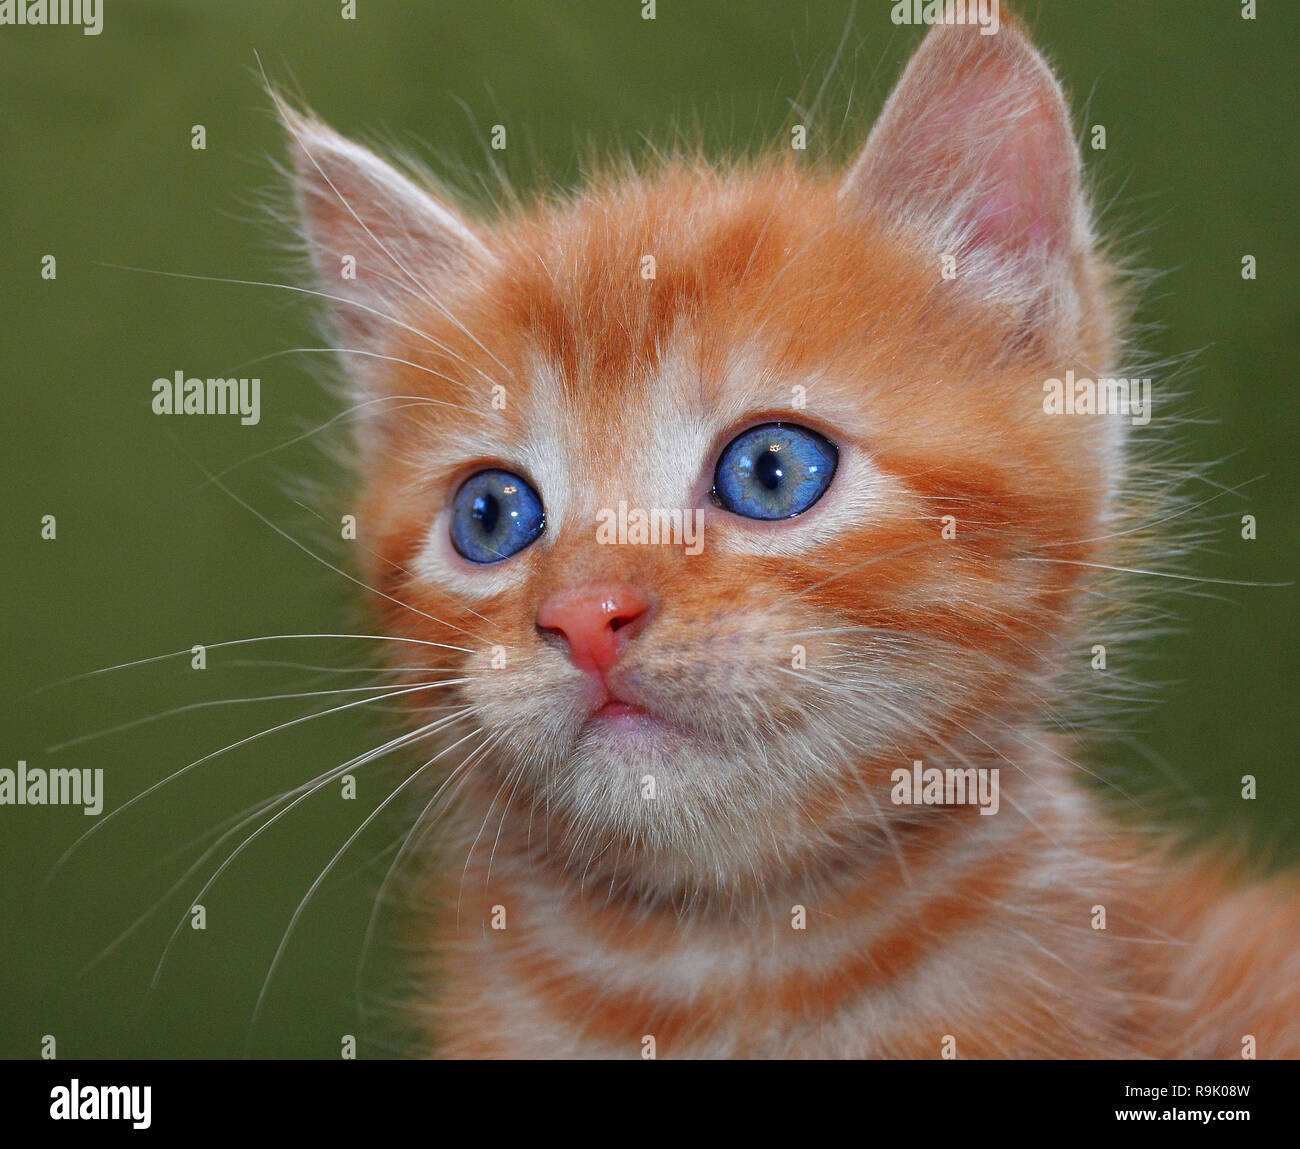 Die rote Katze mit blauen Augen und weißen Schnurrbart sieht genau  geradeaus. Grüner Hintergrund. Das Foto. Flauschige cute cute kitten  Stockfotografie - Alamy